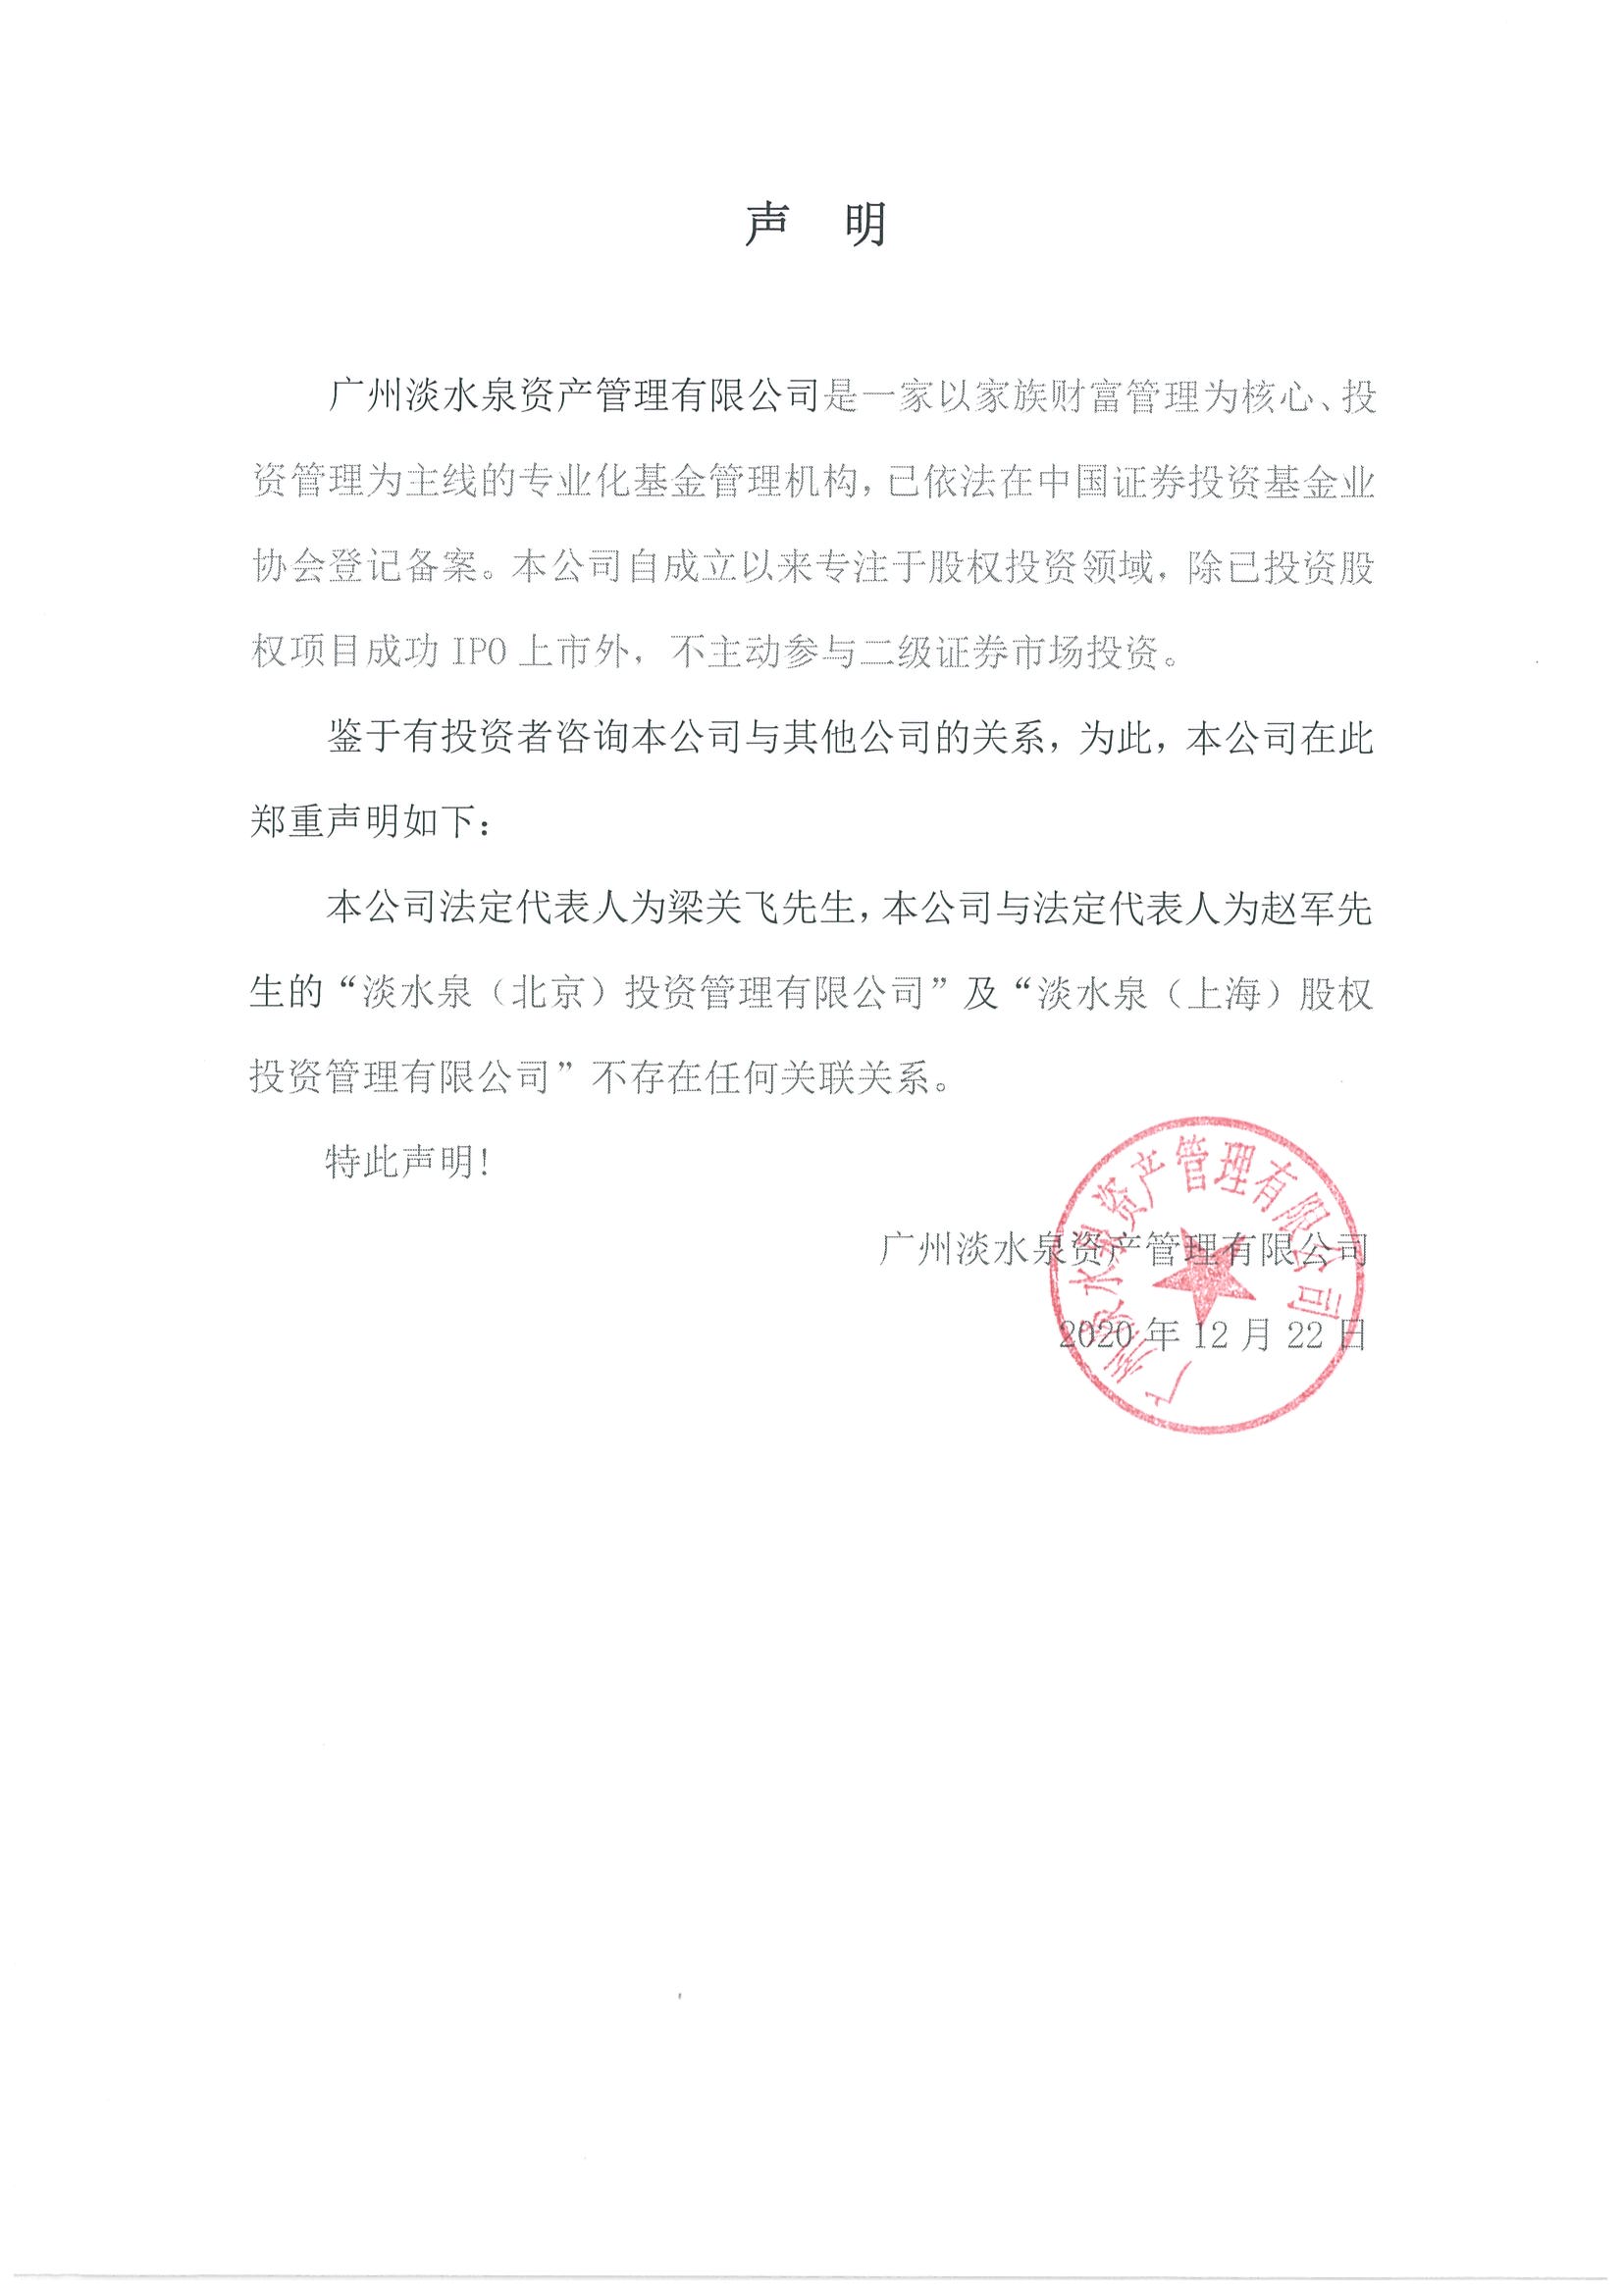 昨日事件后，给奔驰的律师函来了_搜狐汽车_搜狐网